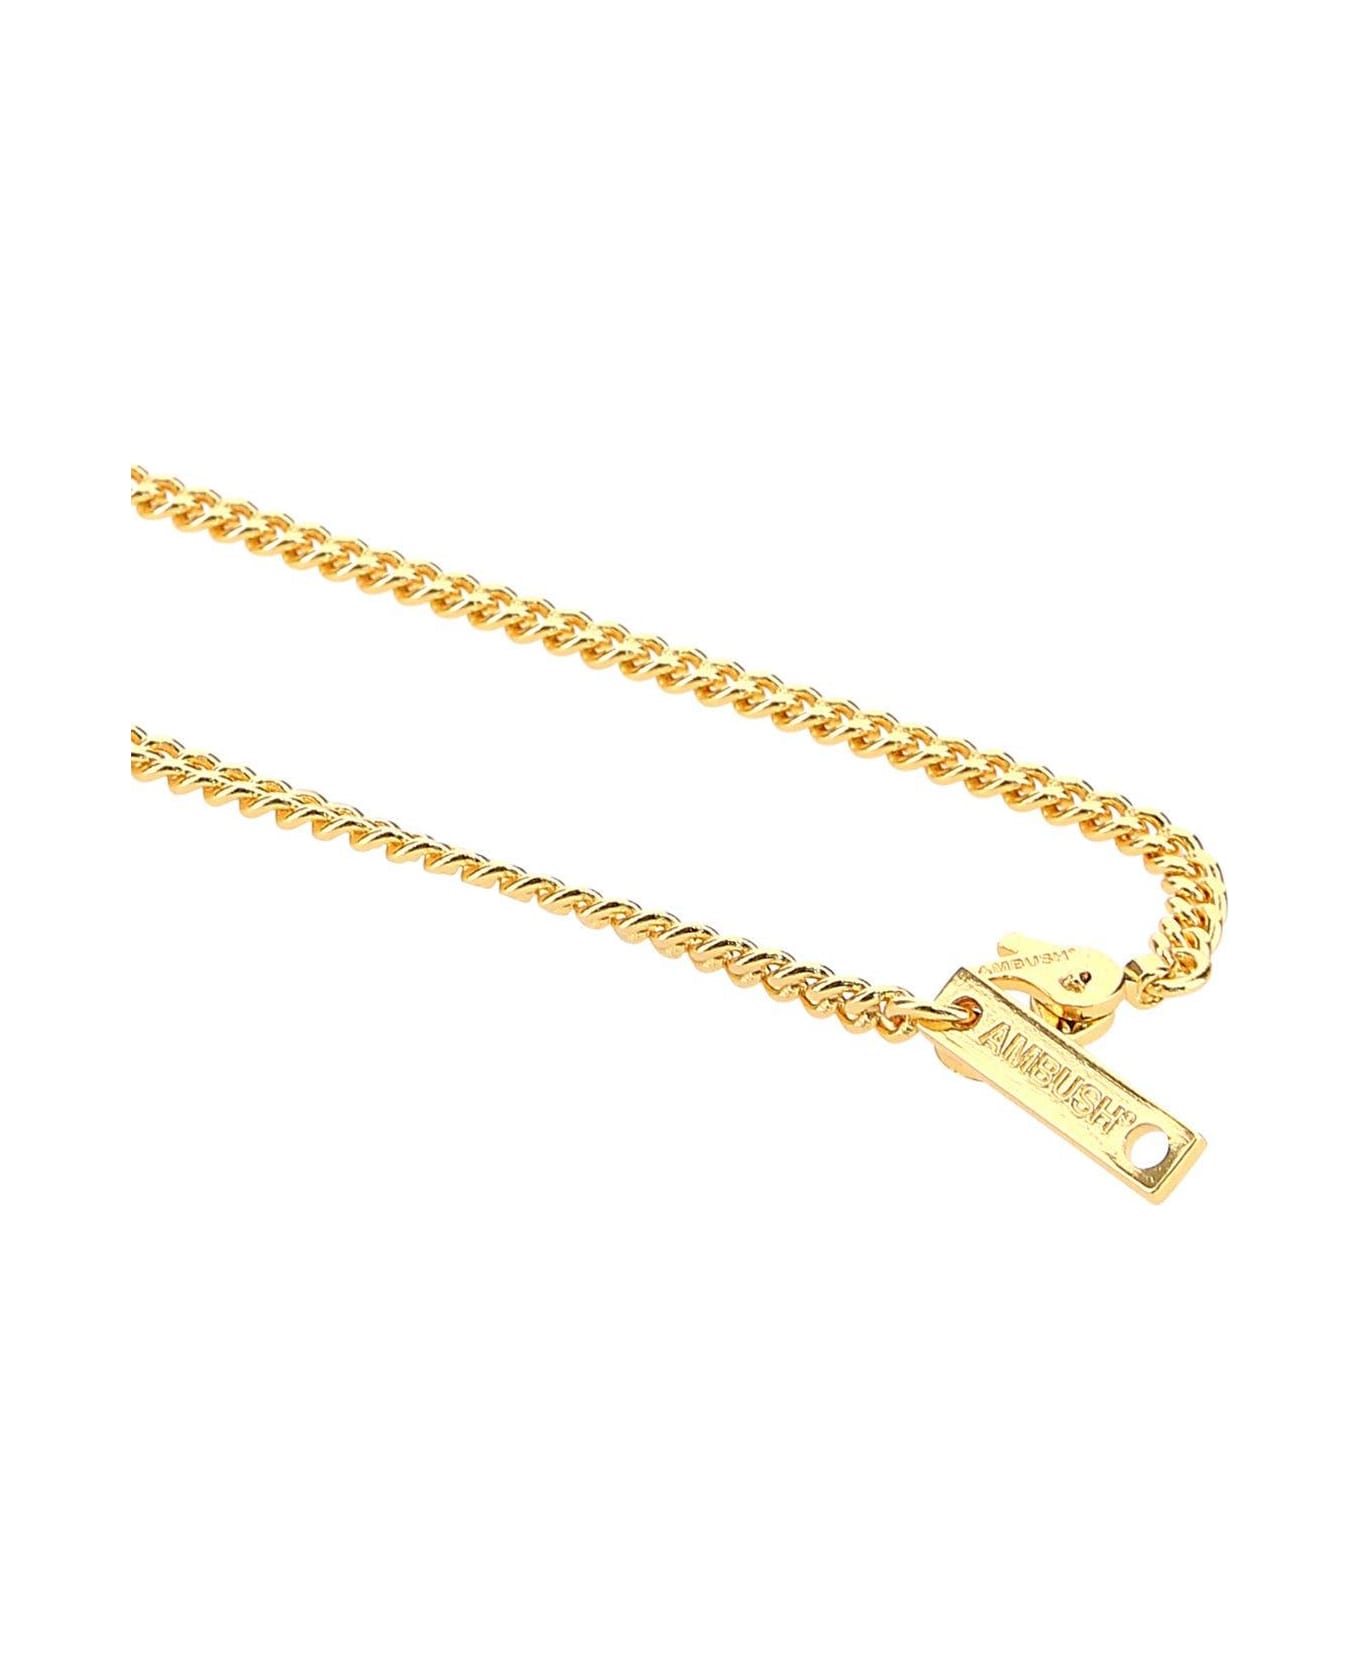 AMBUSH Gold Metal Lighter Case Necklace - Golden